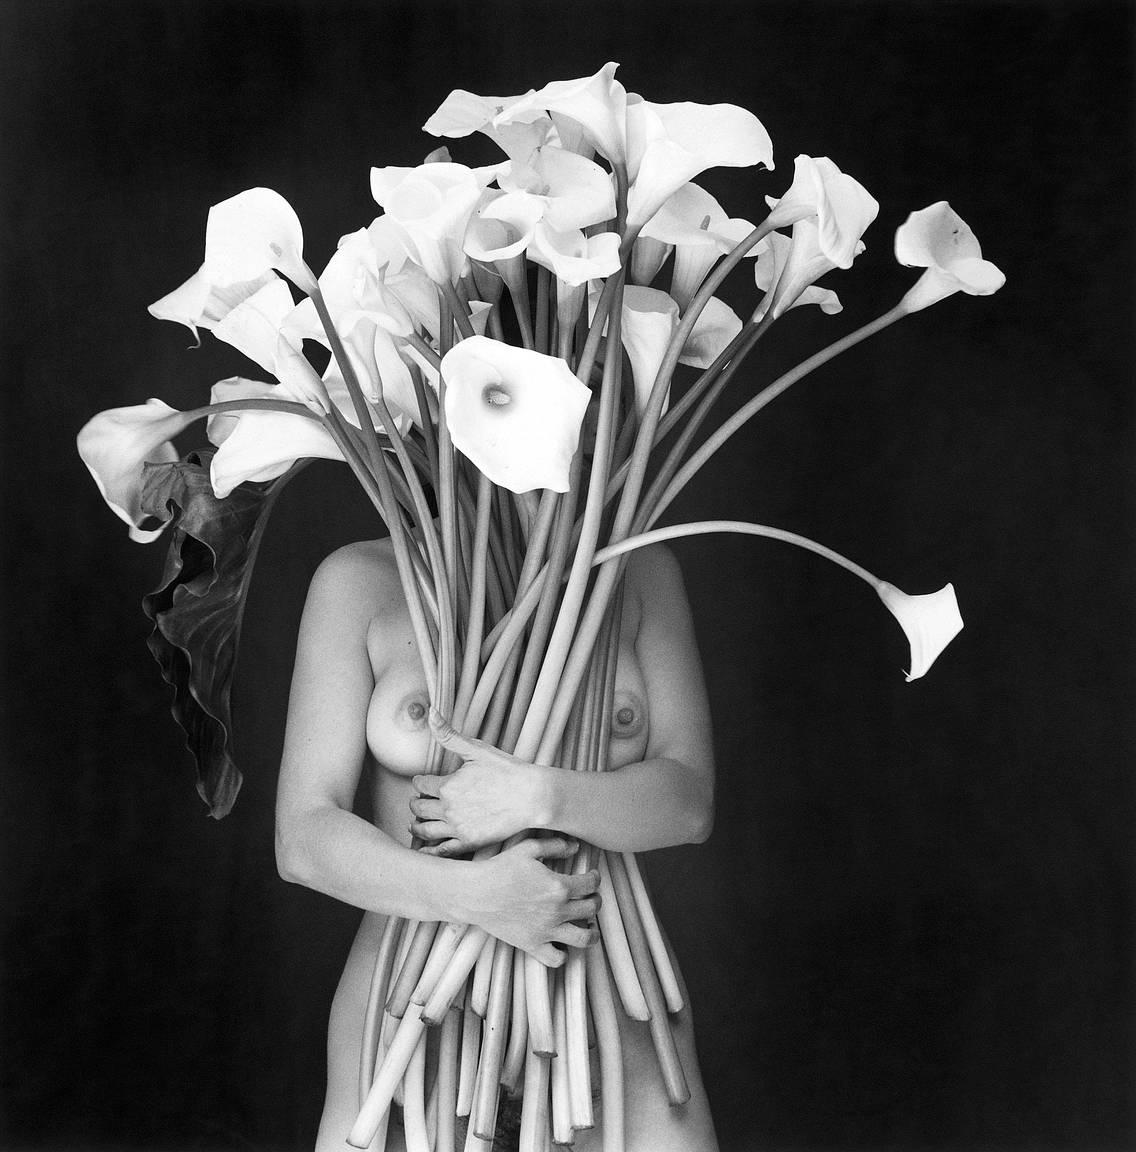 Abrazo de Luz, Mexique, 2000 - Flor Garduño (Photographie en noir et blanc)